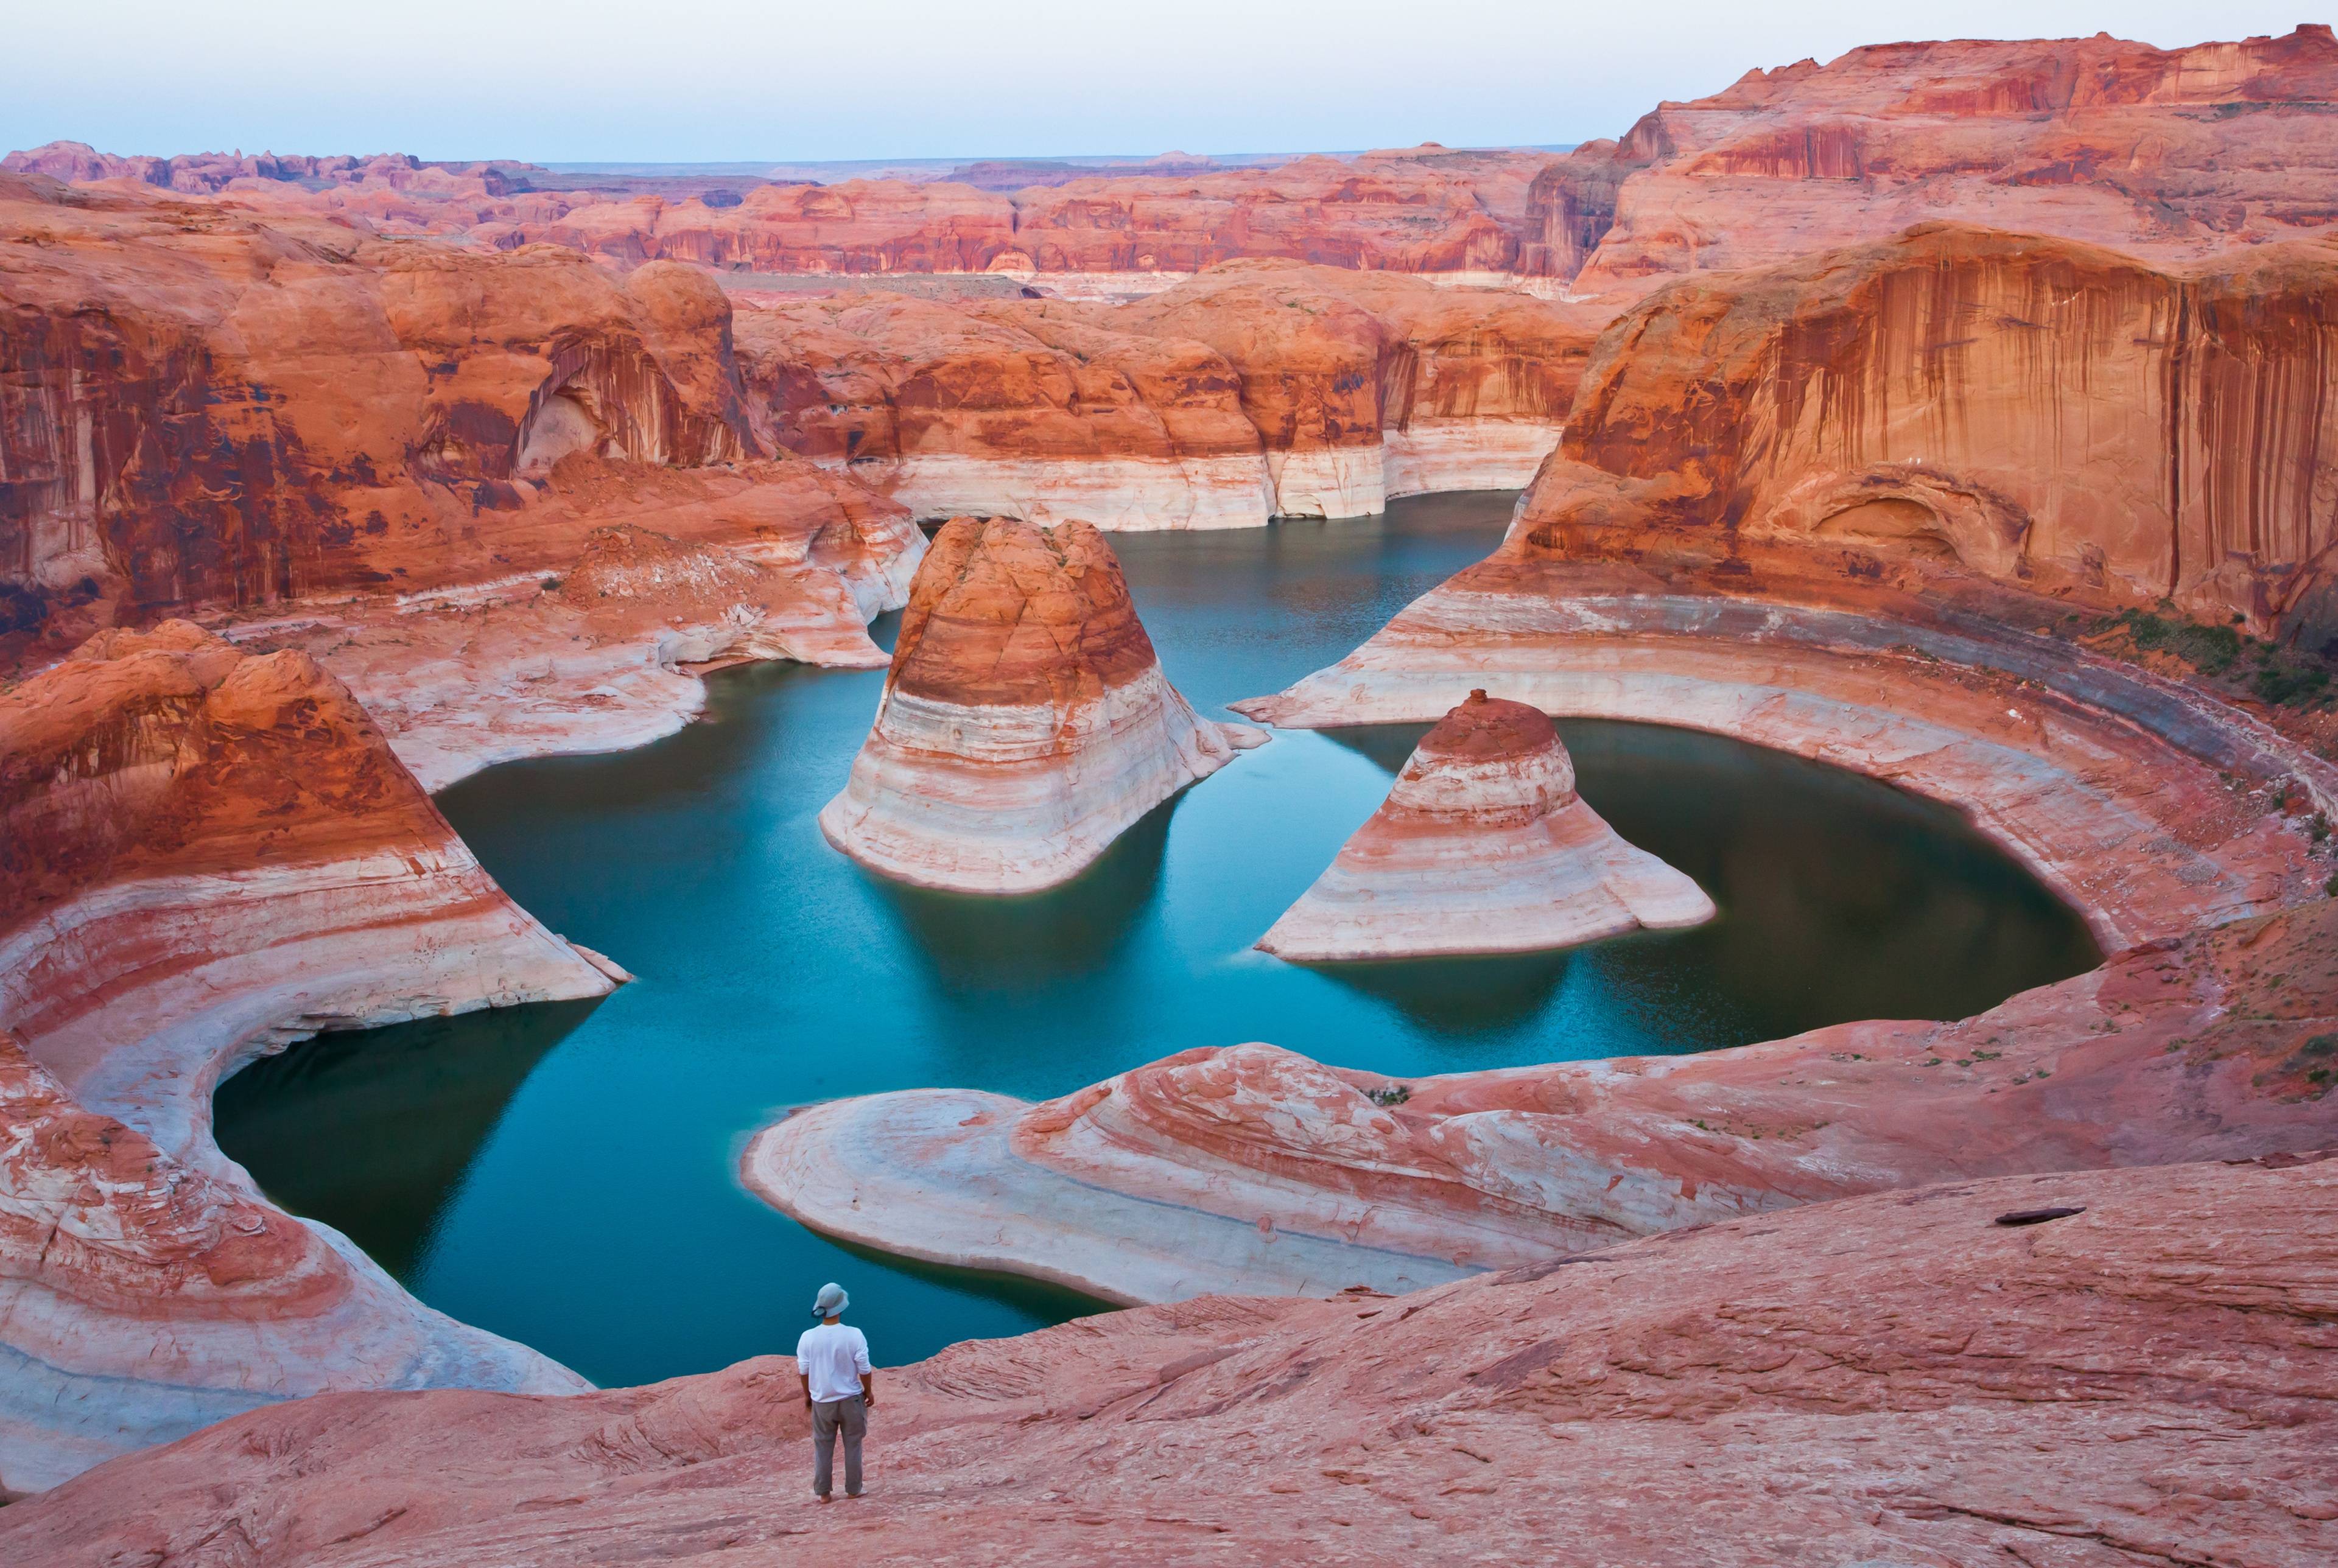 Voyagez à travers l'Arizona, l'Utah et le Nevada et découvrez les merveilles naturelles du Sud-Ouest.